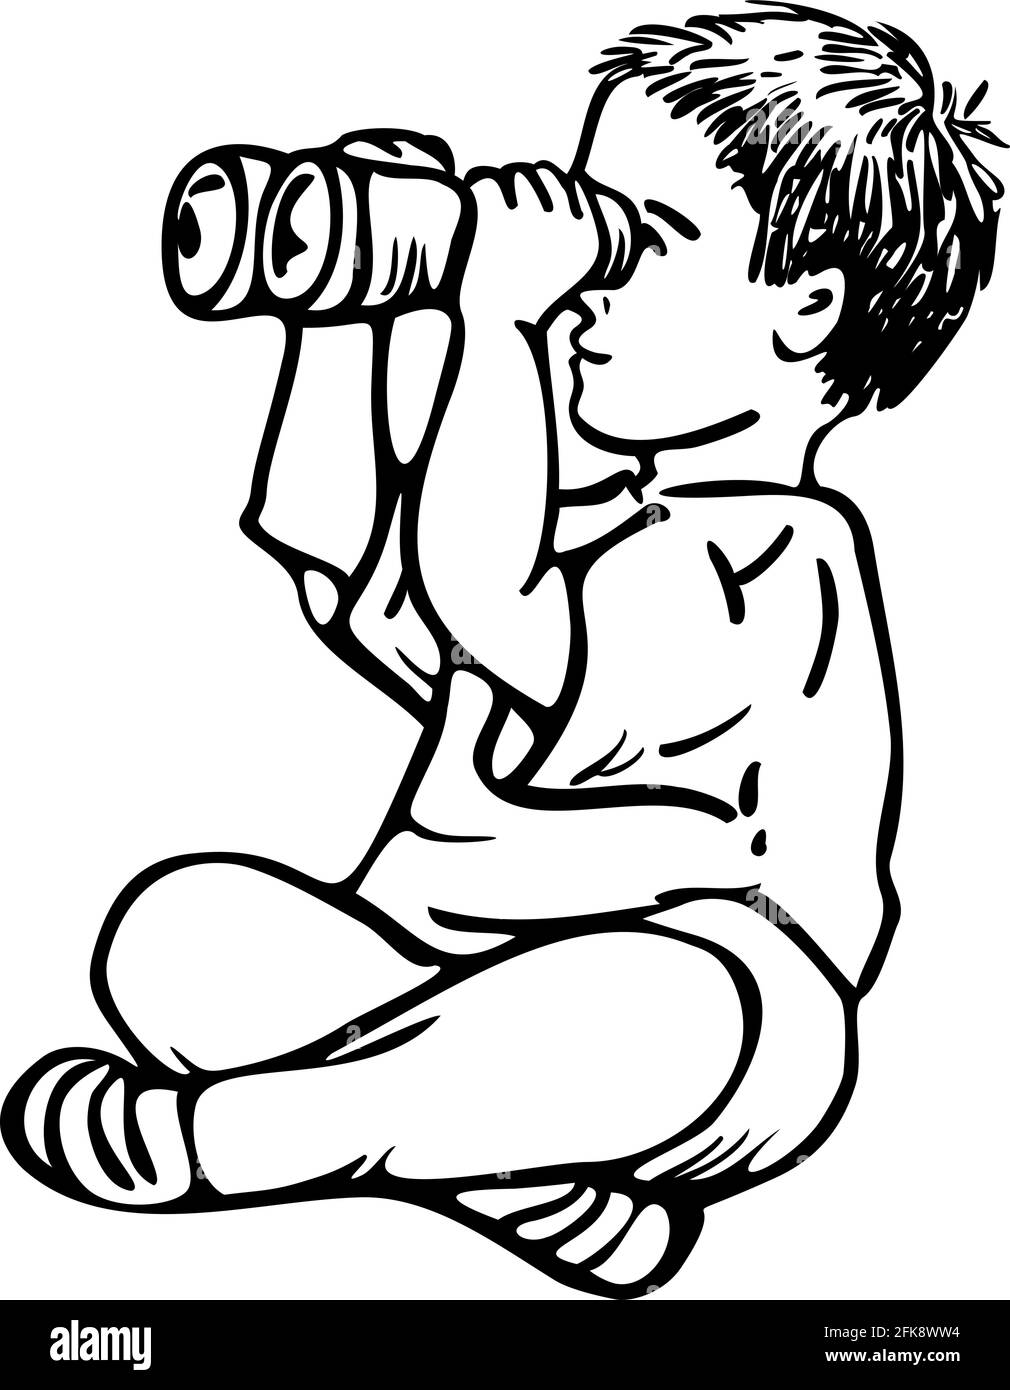 Vektor Schwarz-Weiß-Illustration des kleinen Jungen schaut durch ein Fernglas. Design für das ausmalen. Stock Vektor